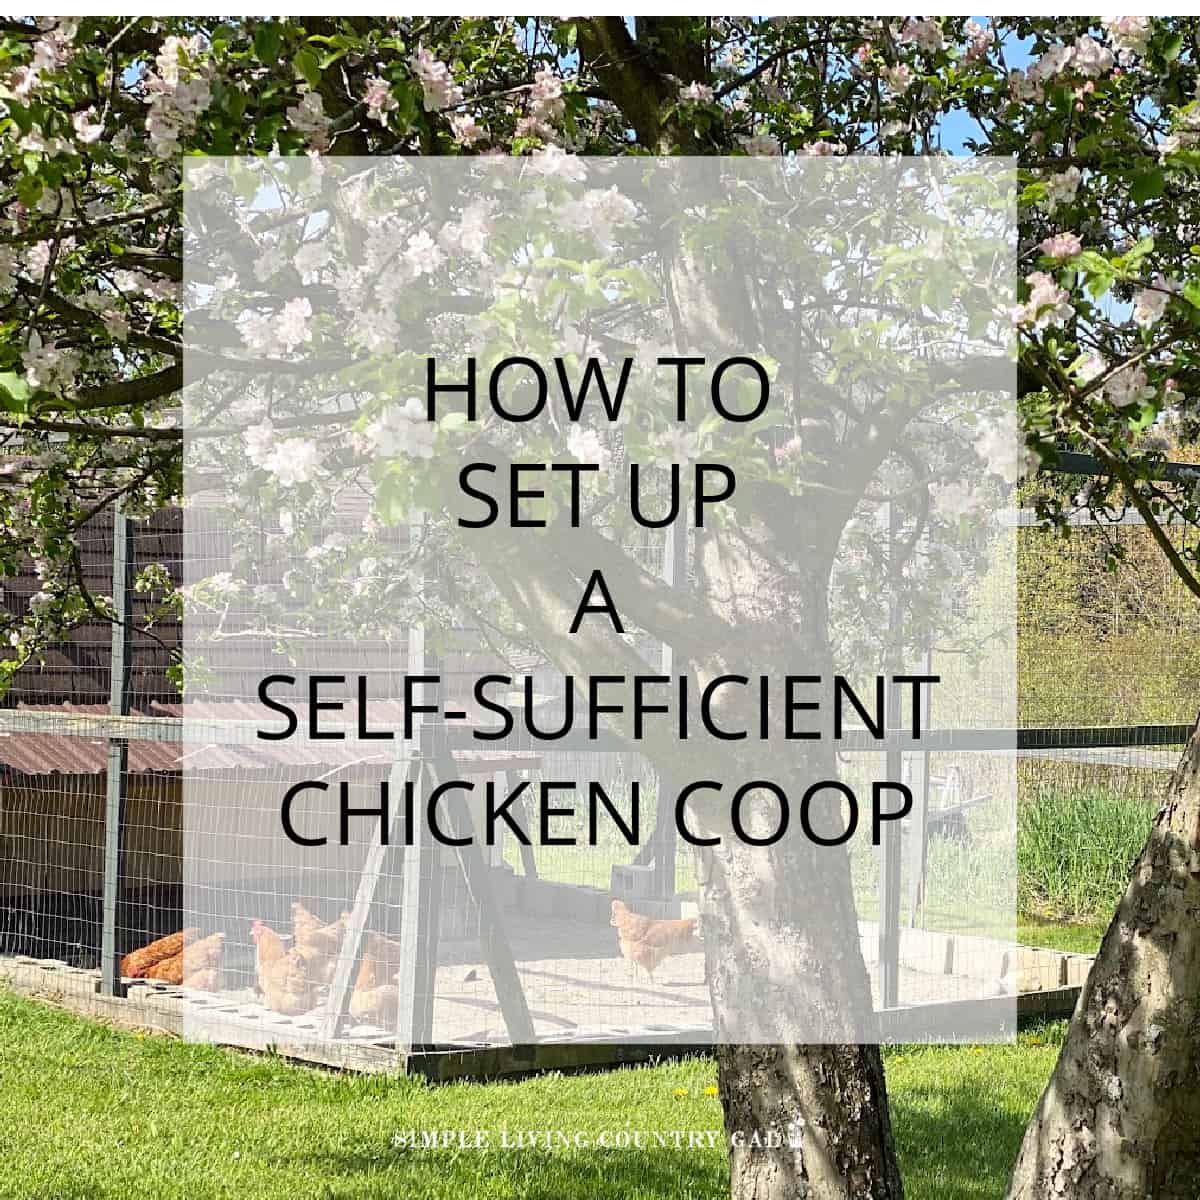 Self-Sufficient Chicken Coop